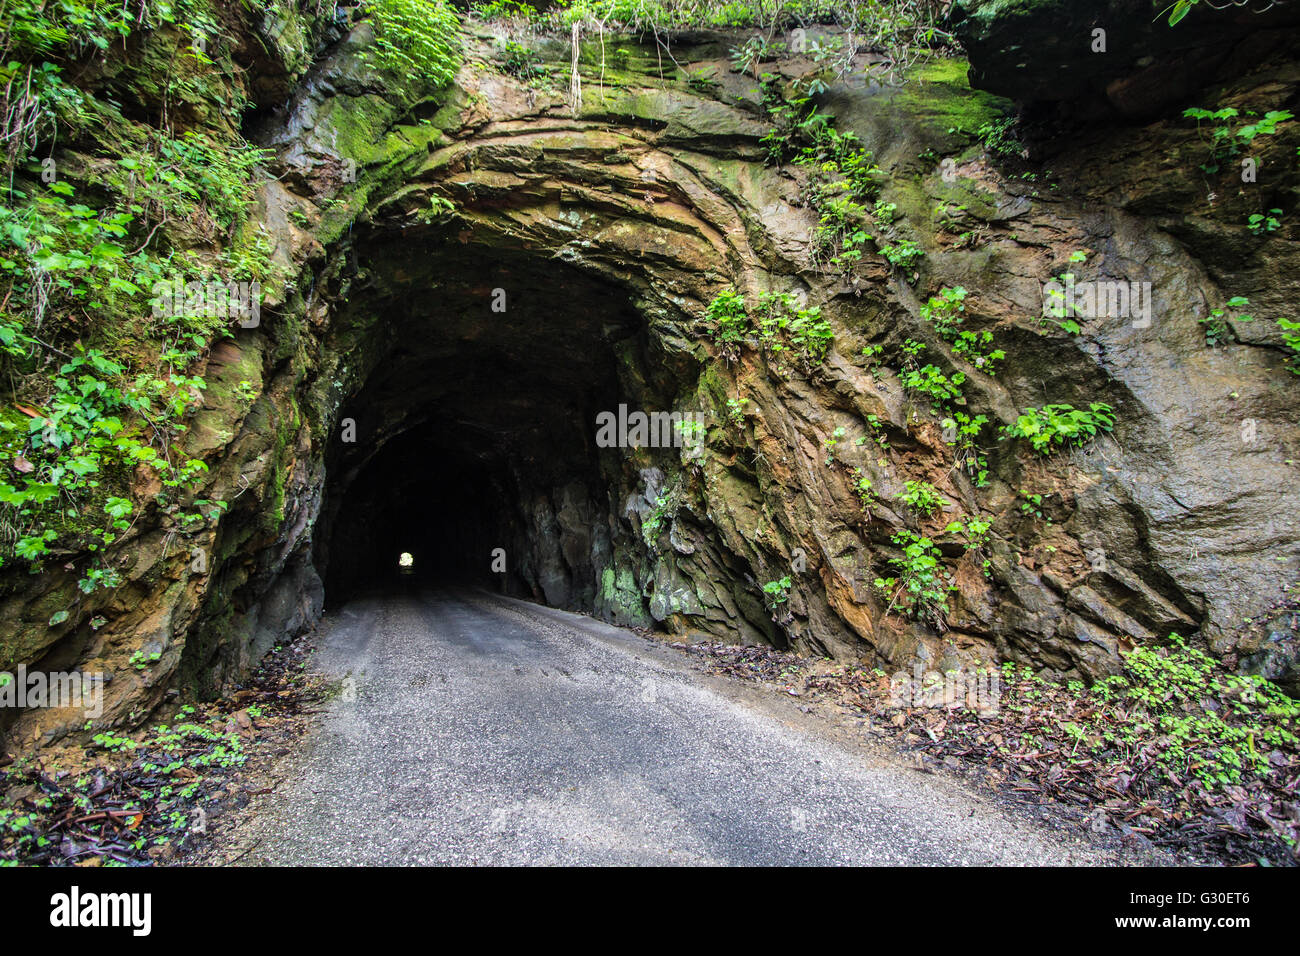 Die 900 Fuß Nada Tunnel in der Red River Gorge in Kentucky. Für den Verkehr geöffnet, die erschütternde Einweg-Tunnel ist eine Durchgangsstraße für Stockfoto